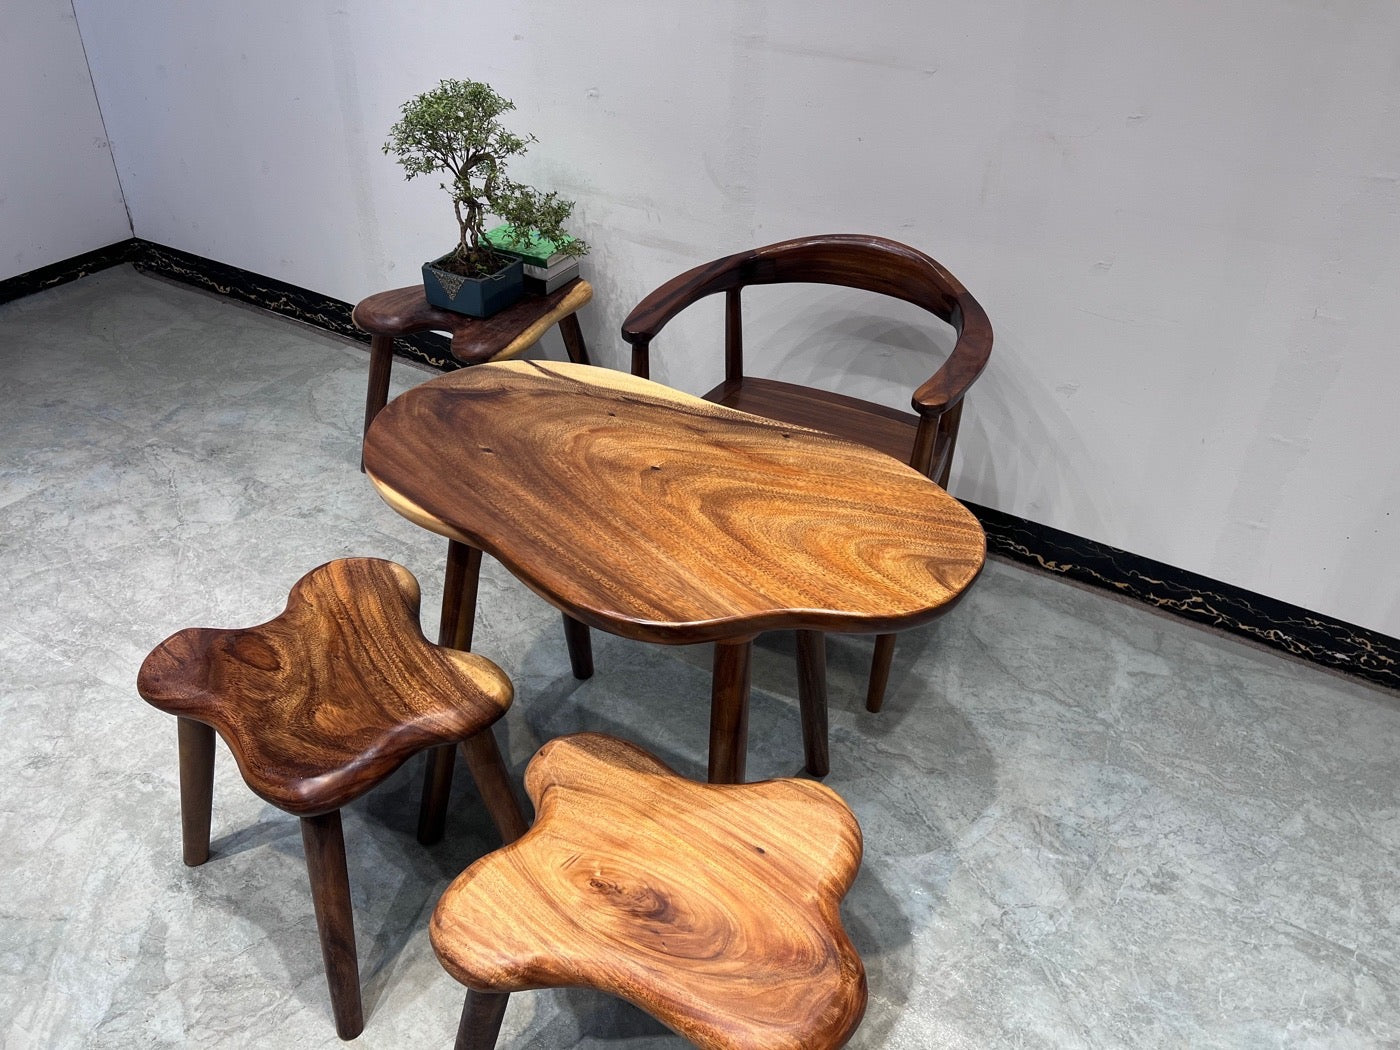 طاولة خارجية من خشب الجوز ذات الحافة الحية، وطاولة قهوة خشبية على شكل سحابة، وشرفة حديقة مقاعد البدلاء